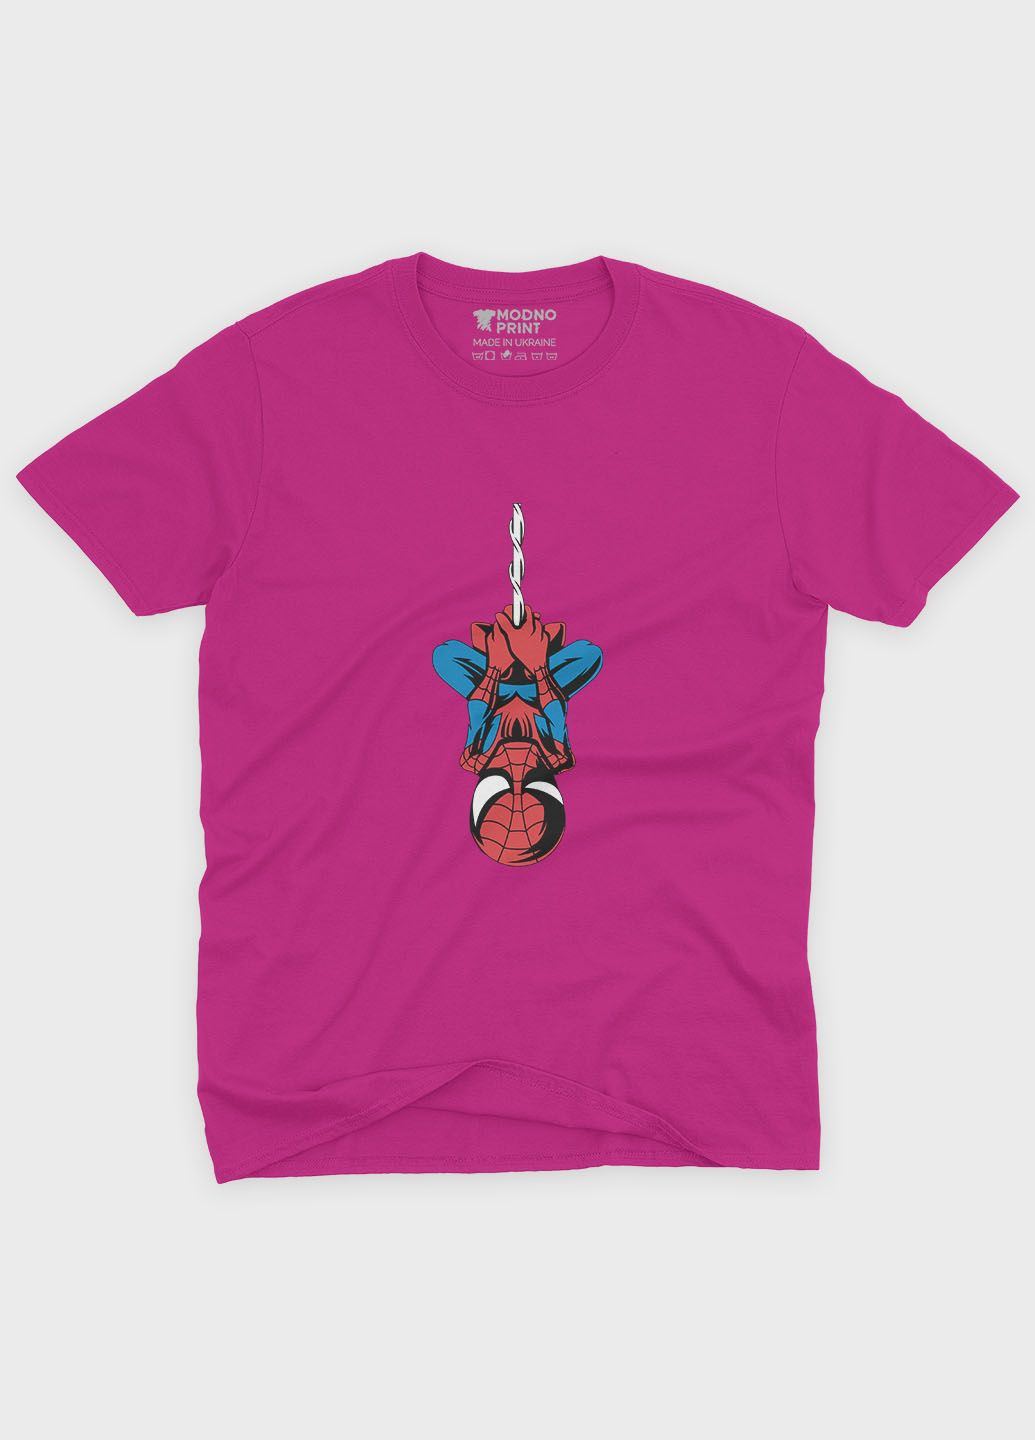 Рожева демісезонна футболка для дівчинки з принтом супергероя - людина-павук (ts001-1-fuxj-006-014-085-g) Modno